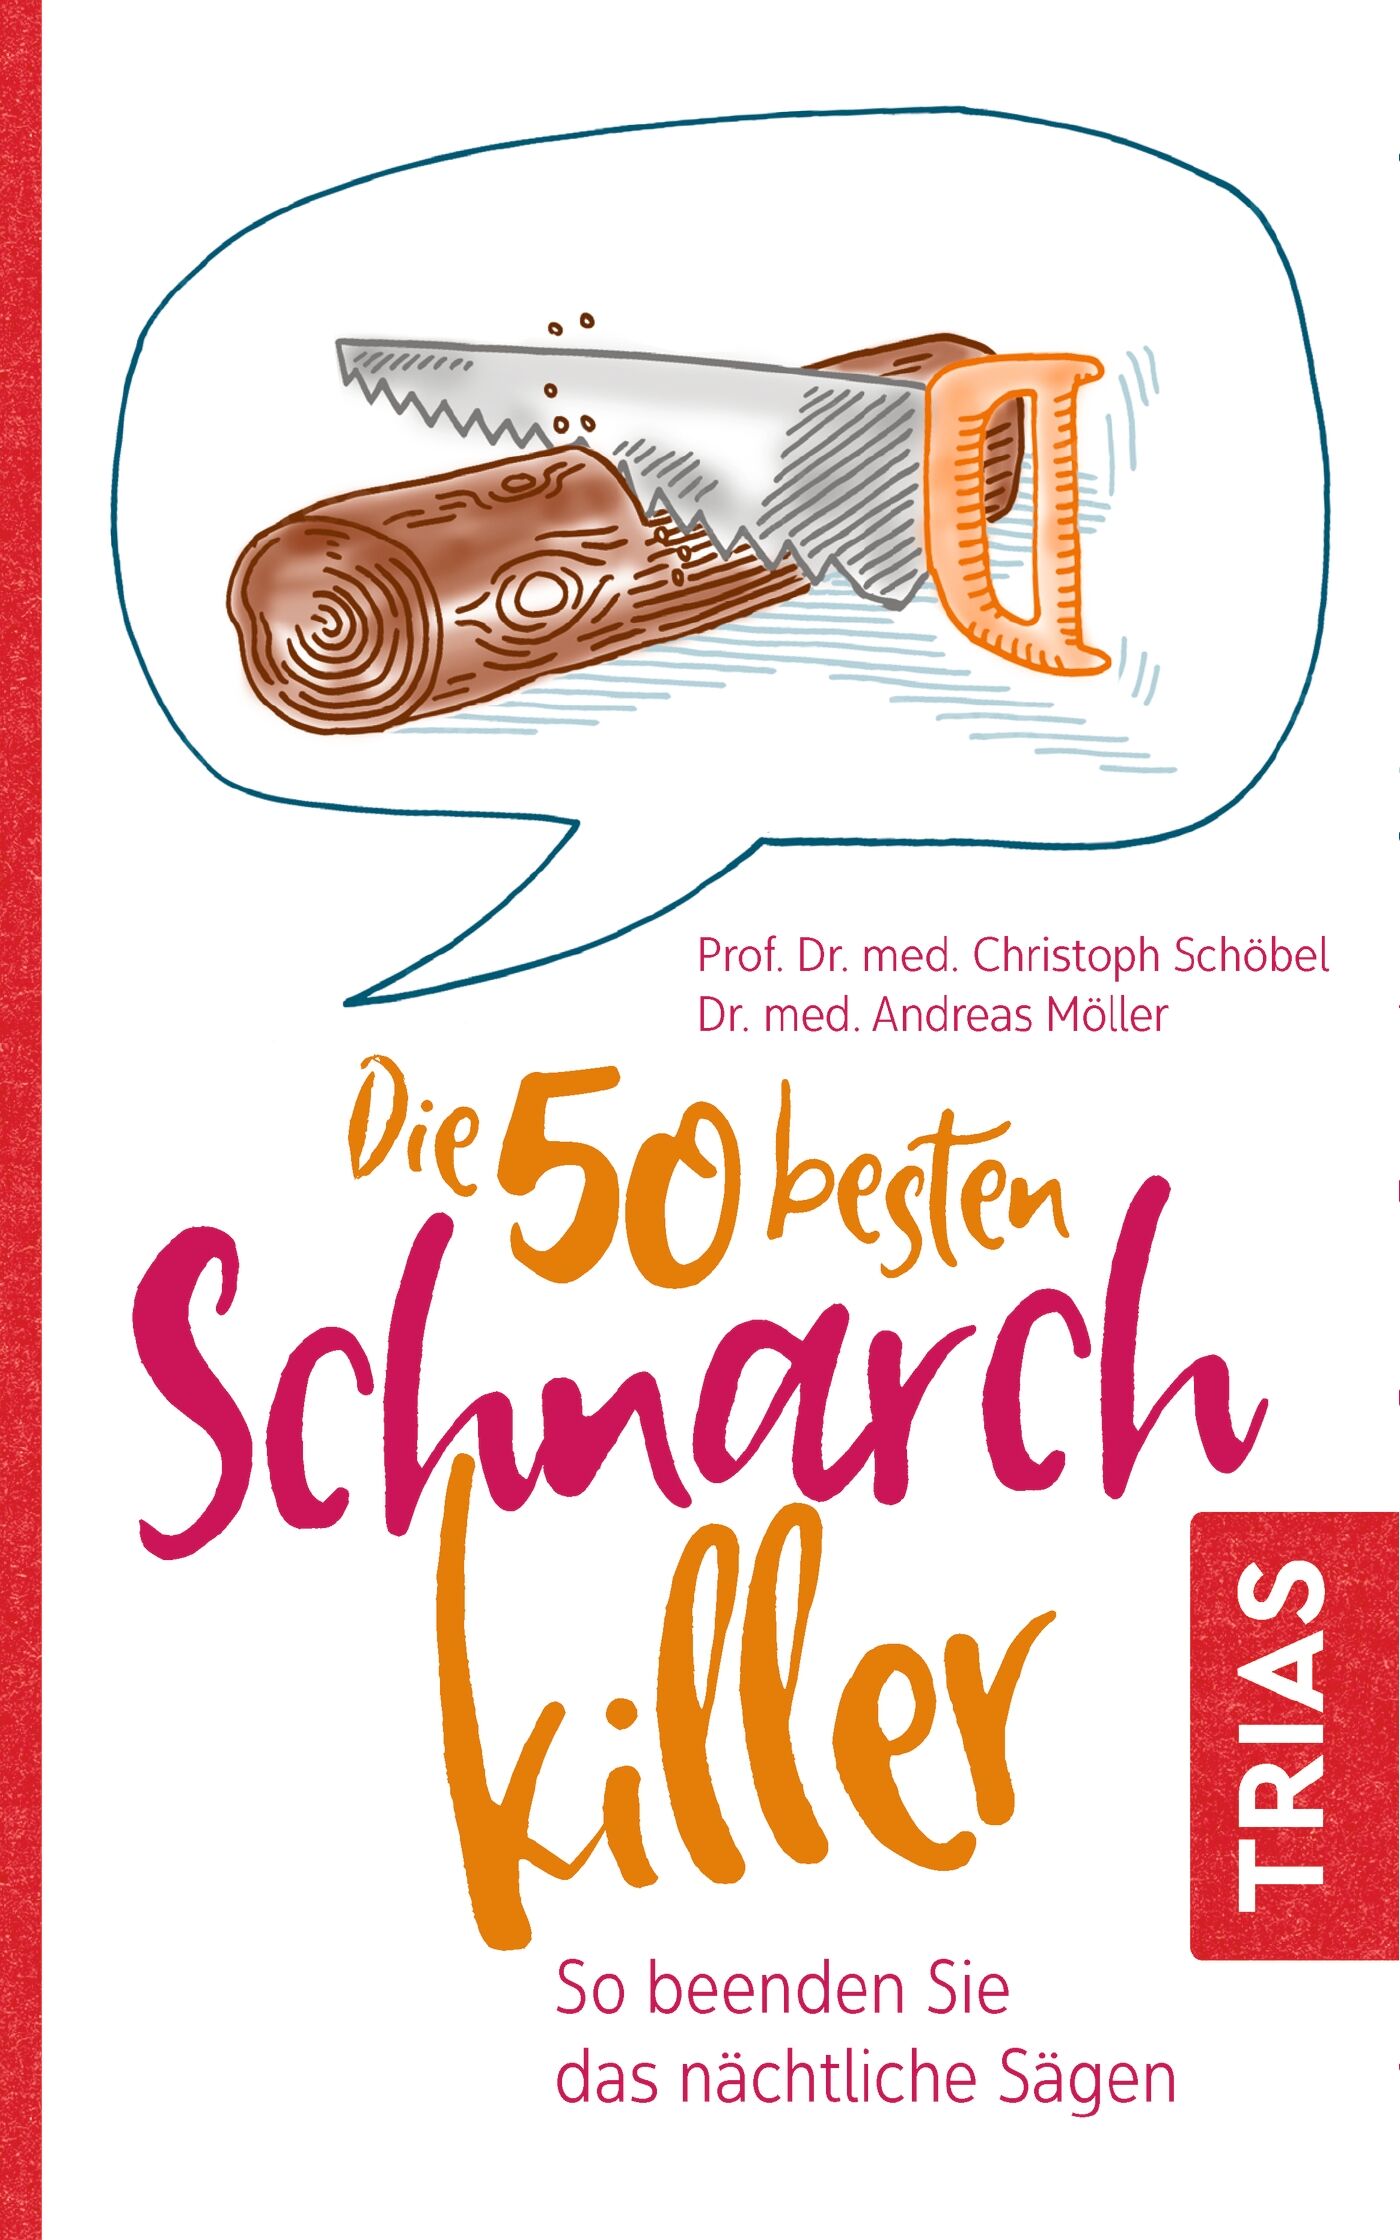 Die 50 besten Schnarch-Killer, 9783432112107